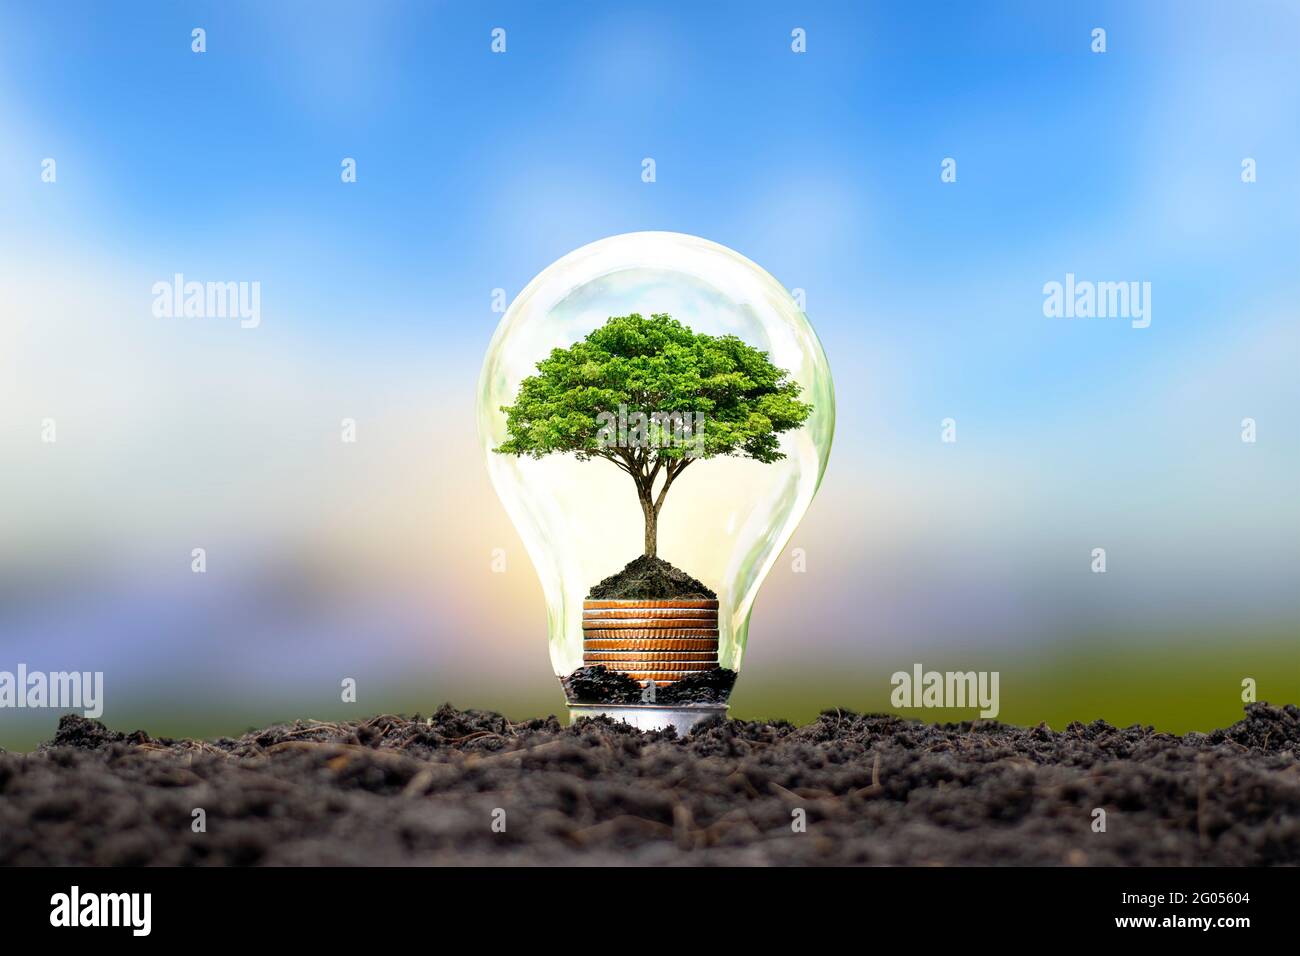 Arbre poussant sur une pièce d'argent dans une ampoule économie d'énergie et concept environnemental le jour de la terre. Banque D'Images